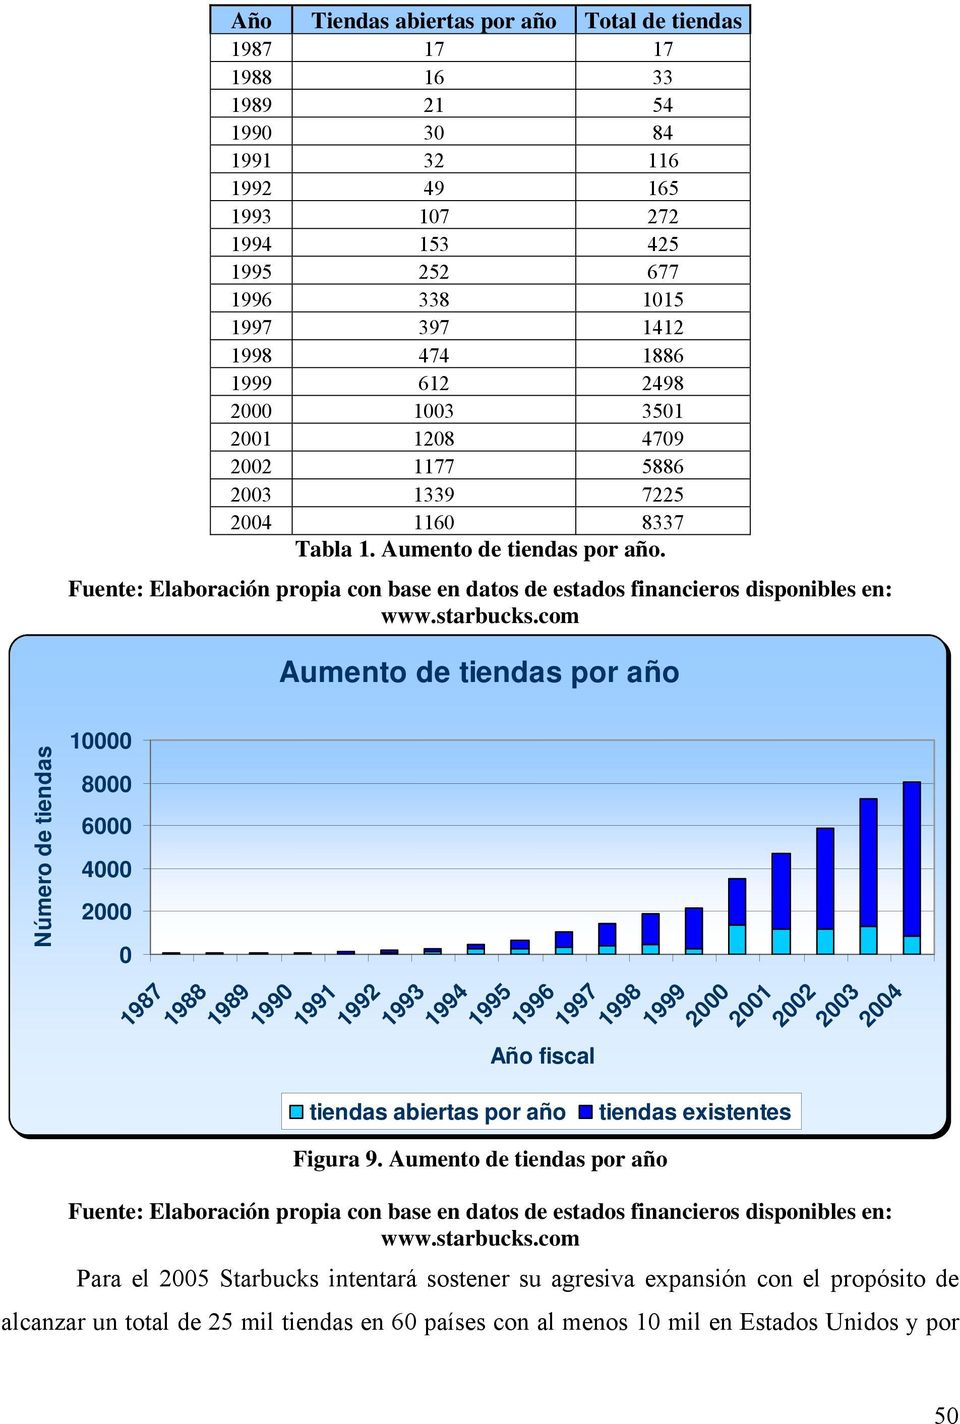 Fuente: Elaboracón propa con base en datos de estados fnanceros dsponbles en: www.starbucks.